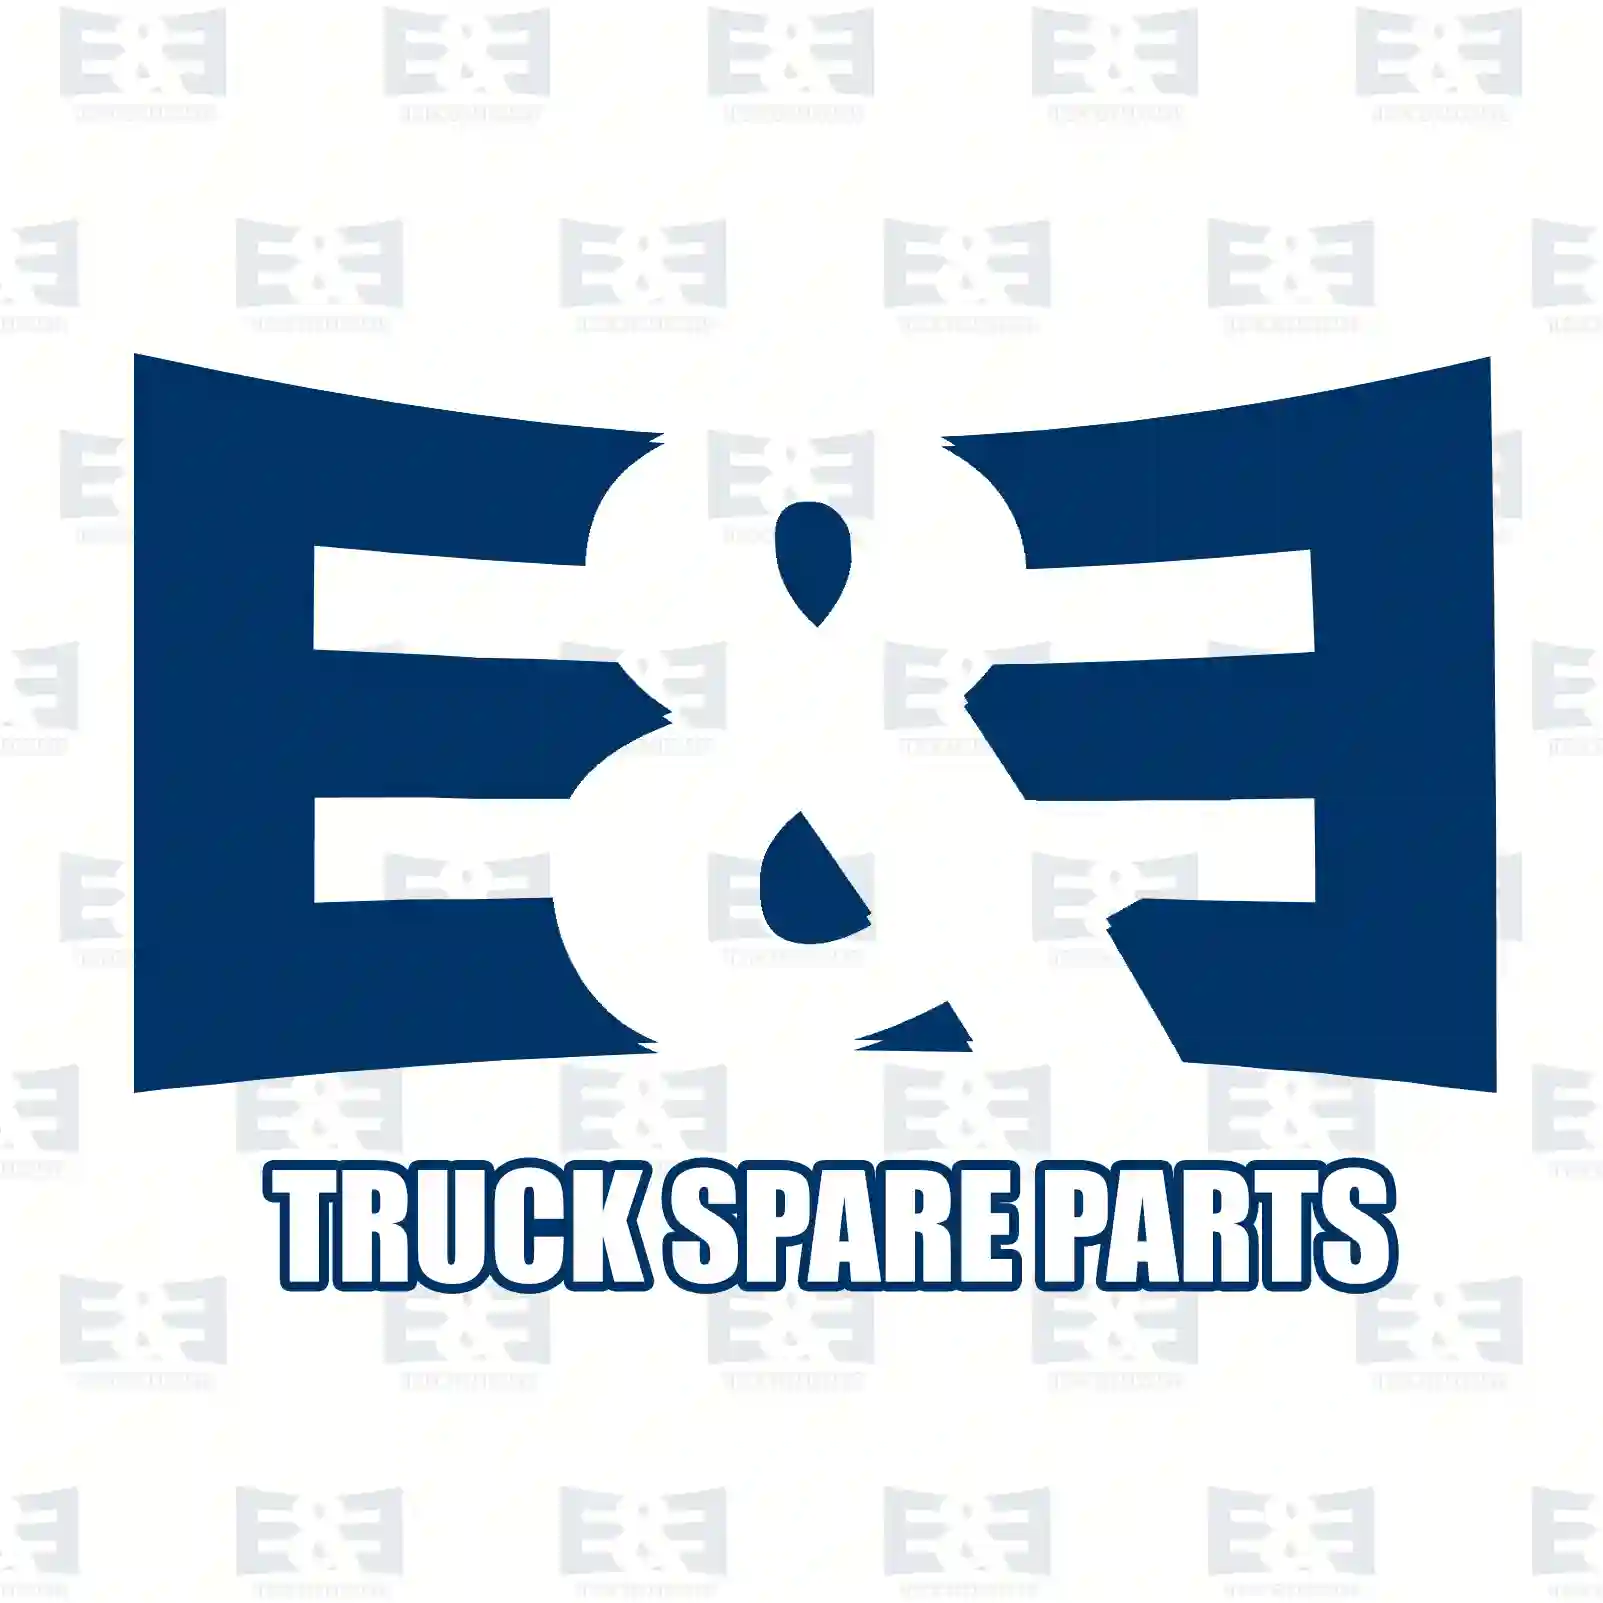 Expansion tank, 2E2201445, 81061026109, 81061026204, 81061026219, , ||  2E2201445 E&E Truck Spare Parts | Truck Spare Parts, Auotomotive Spare Parts Expansion tank, 2E2201445, 81061026109, 81061026204, 81061026219, , ||  2E2201445 E&E Truck Spare Parts | Truck Spare Parts, Auotomotive Spare Parts